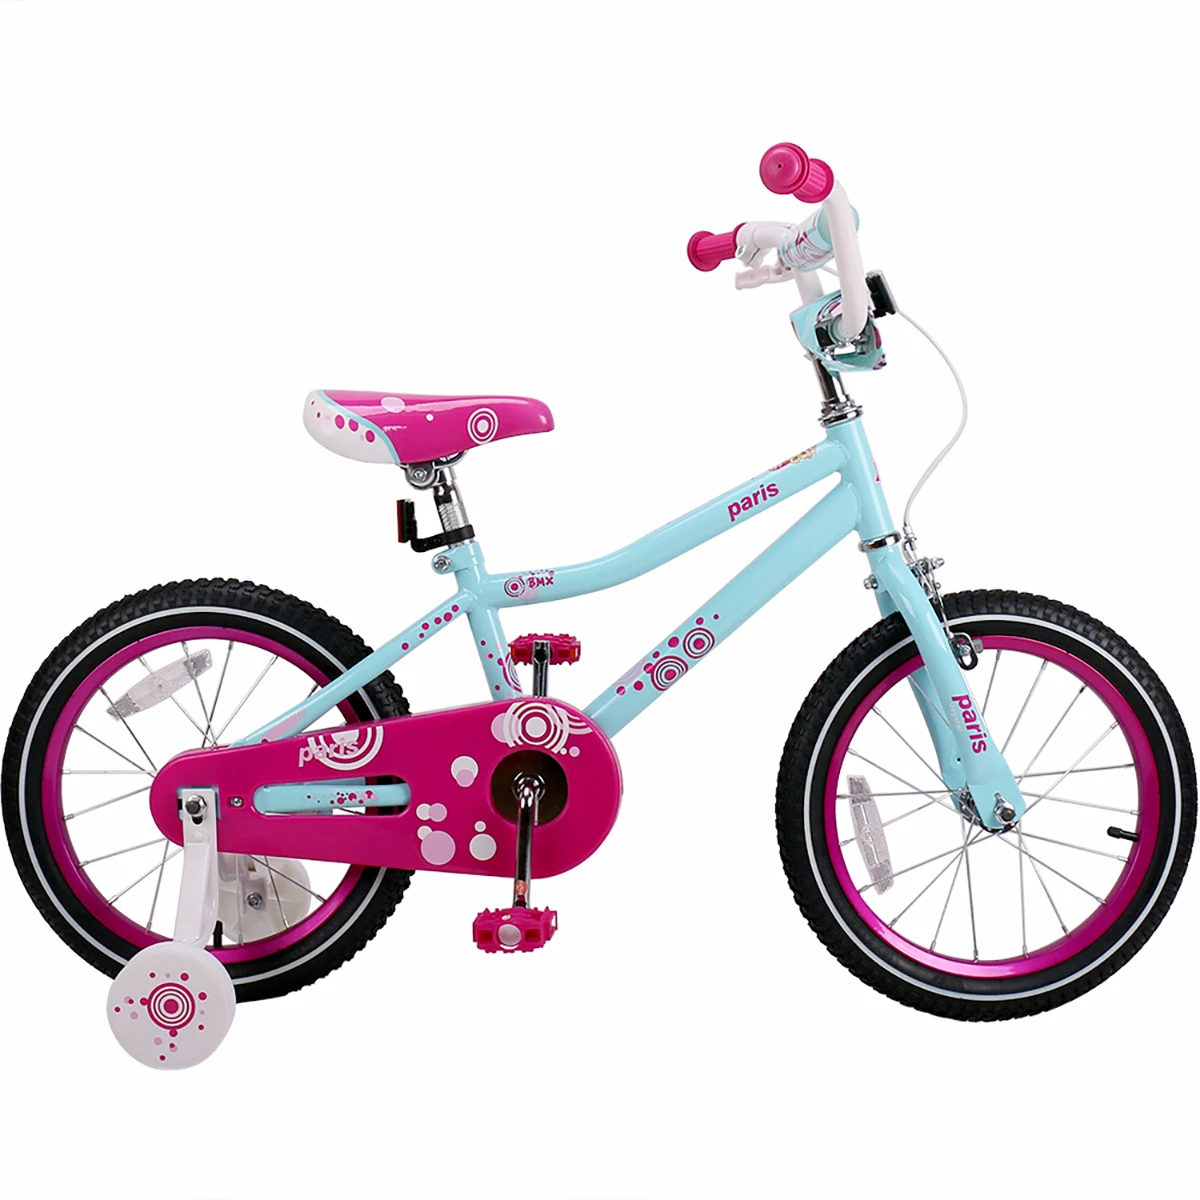 Велосипед детский от 5 лет для девочек. Велосипед Glory детский 16 дюймов. Велосипед детский для девочки Cube 200. Велосипед для девочки 3 года. Дети с велосипедом.